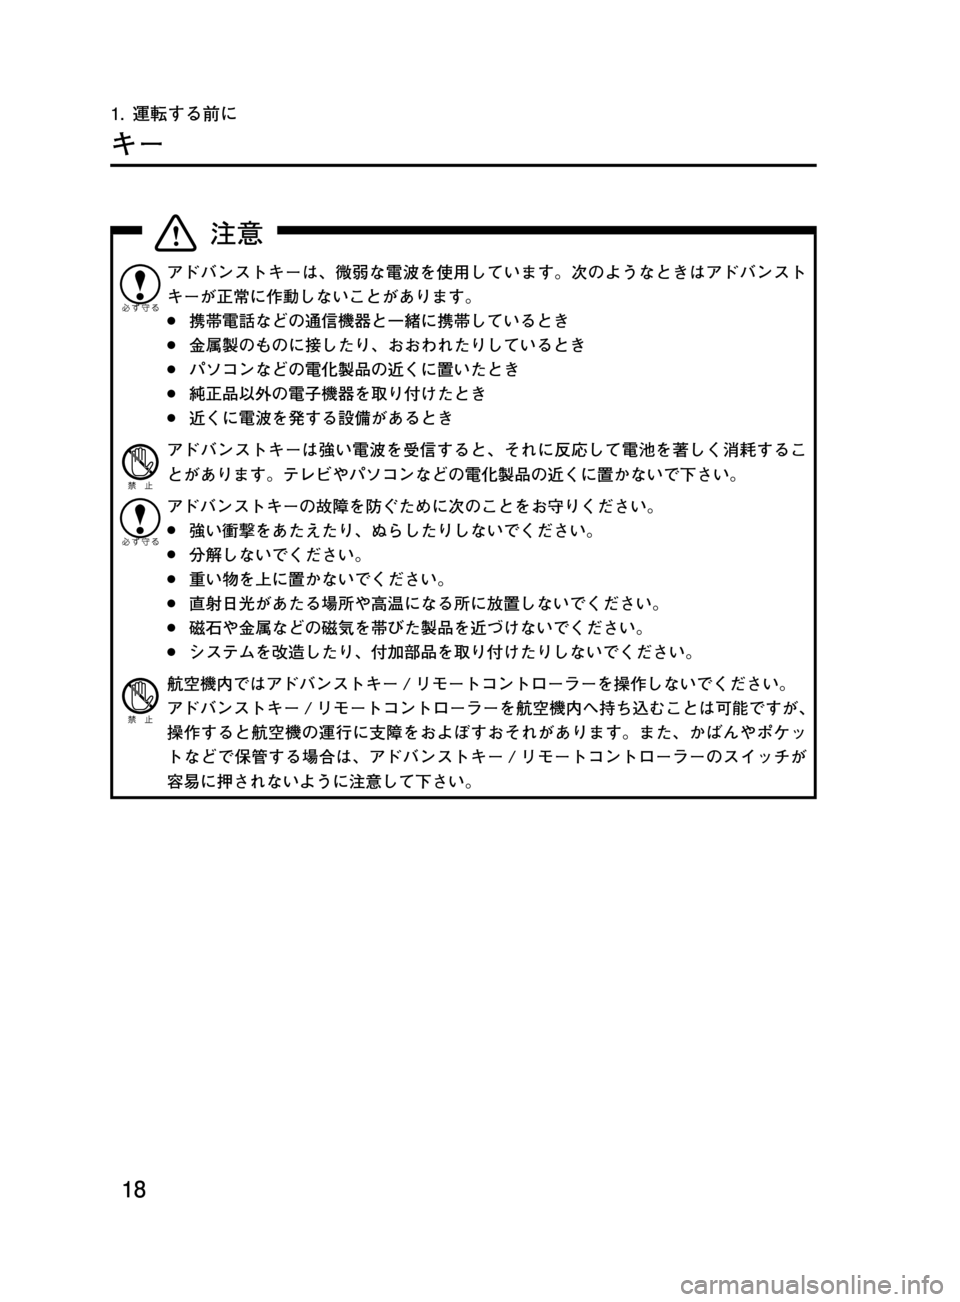 MAZDA MODEL DEMIO 2011  デミオ｜取扱説明書 (in Japanese) ��
��P�S�N��/�P���% 